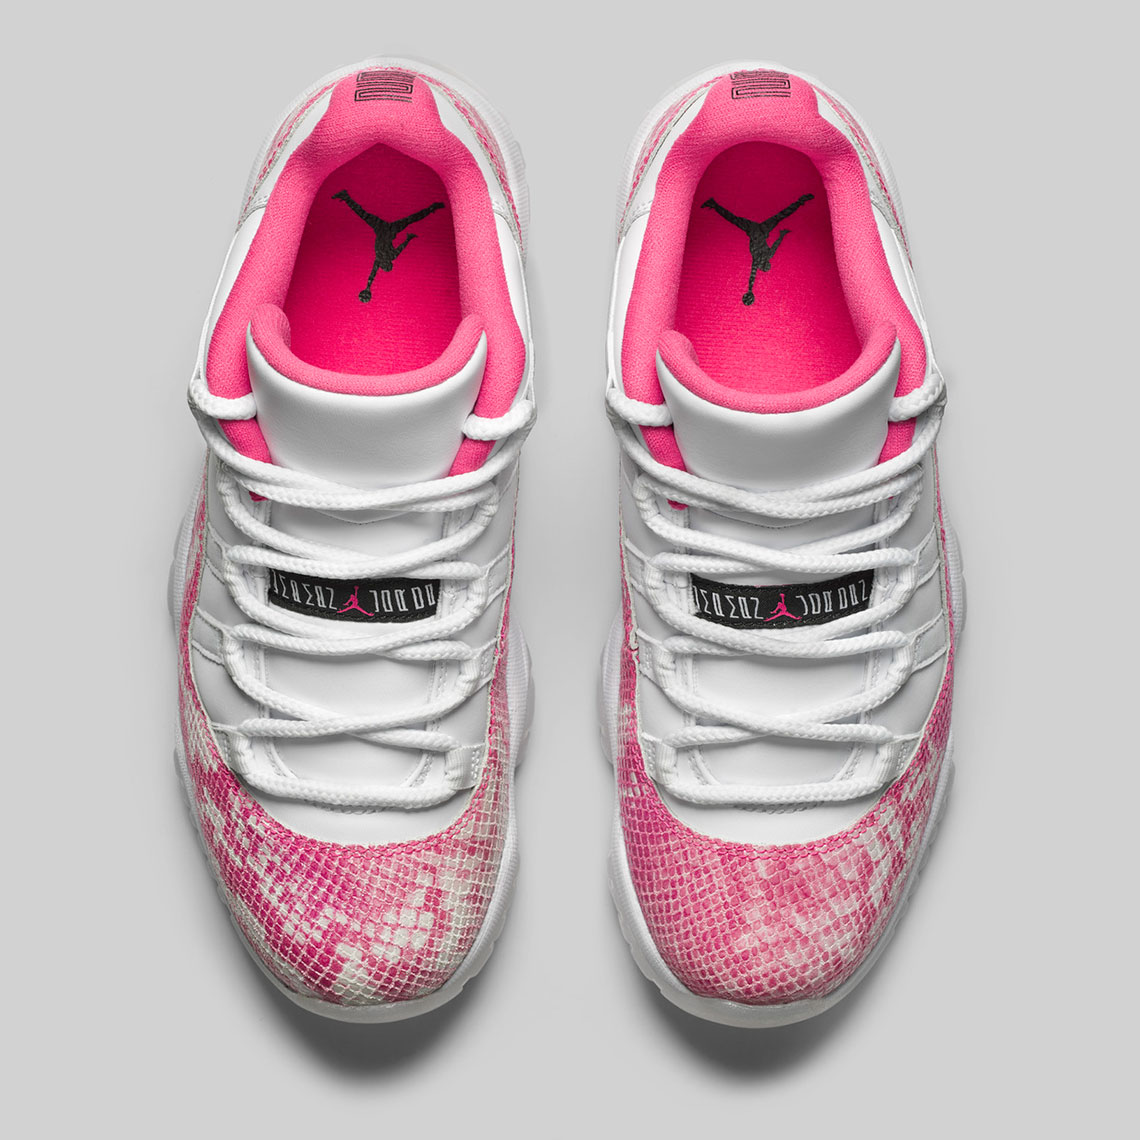 Air Jordan 11 Low Pink Snakeskin Release Date Ah7860 106 3